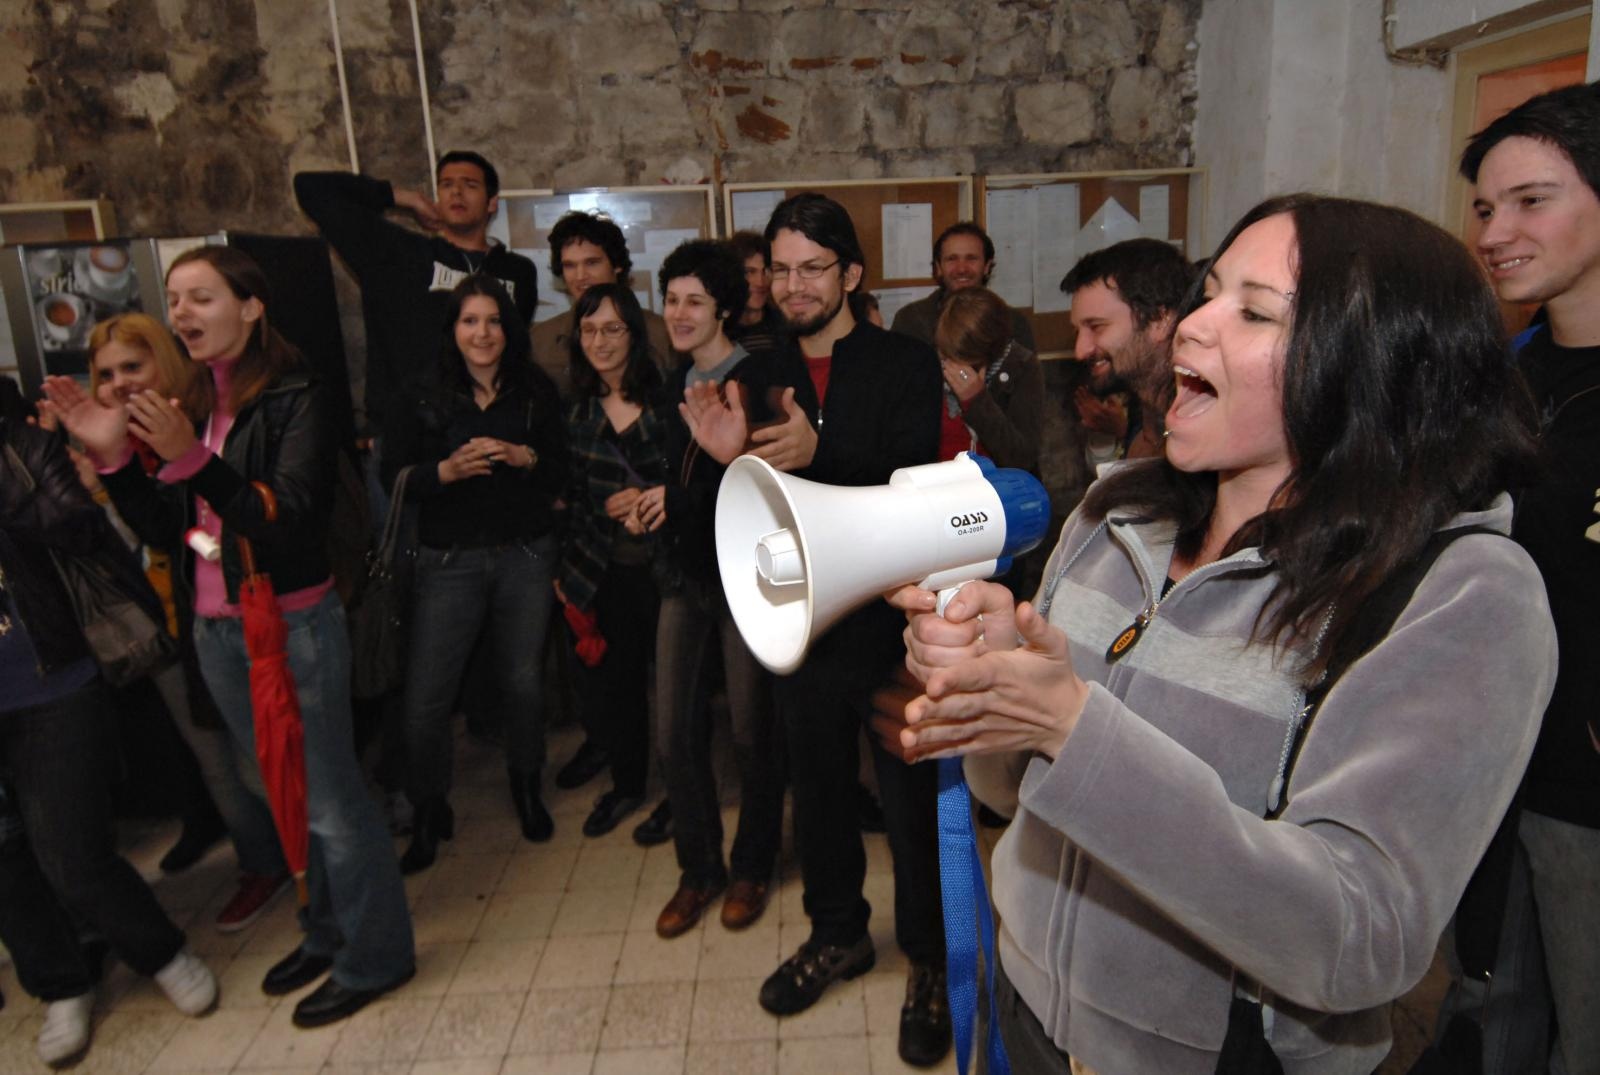 Dan kasnije, 24. travnja, prosvjedovali su studenti FESB-a u Splitu na Filozofskom fakultetu